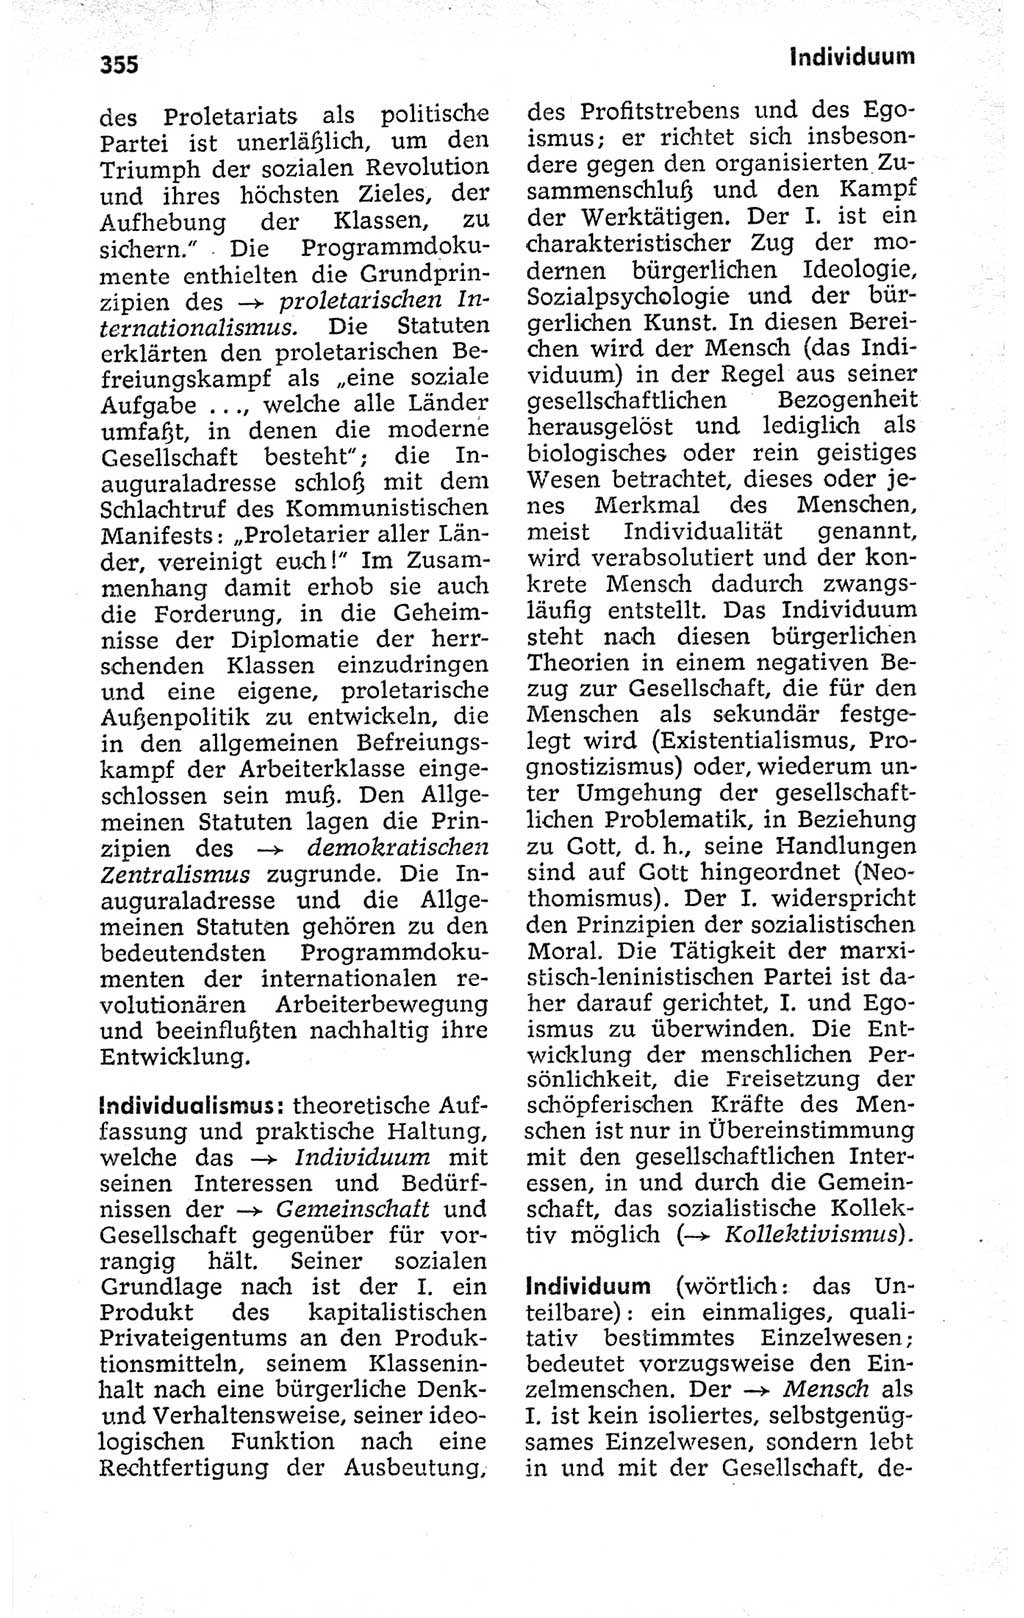 Kleines politisches Wörterbuch [Deutsche Demokratische Republik (DDR)] 1973, Seite 355 (Kl. pol. Wb. DDR 1973, S. 355)